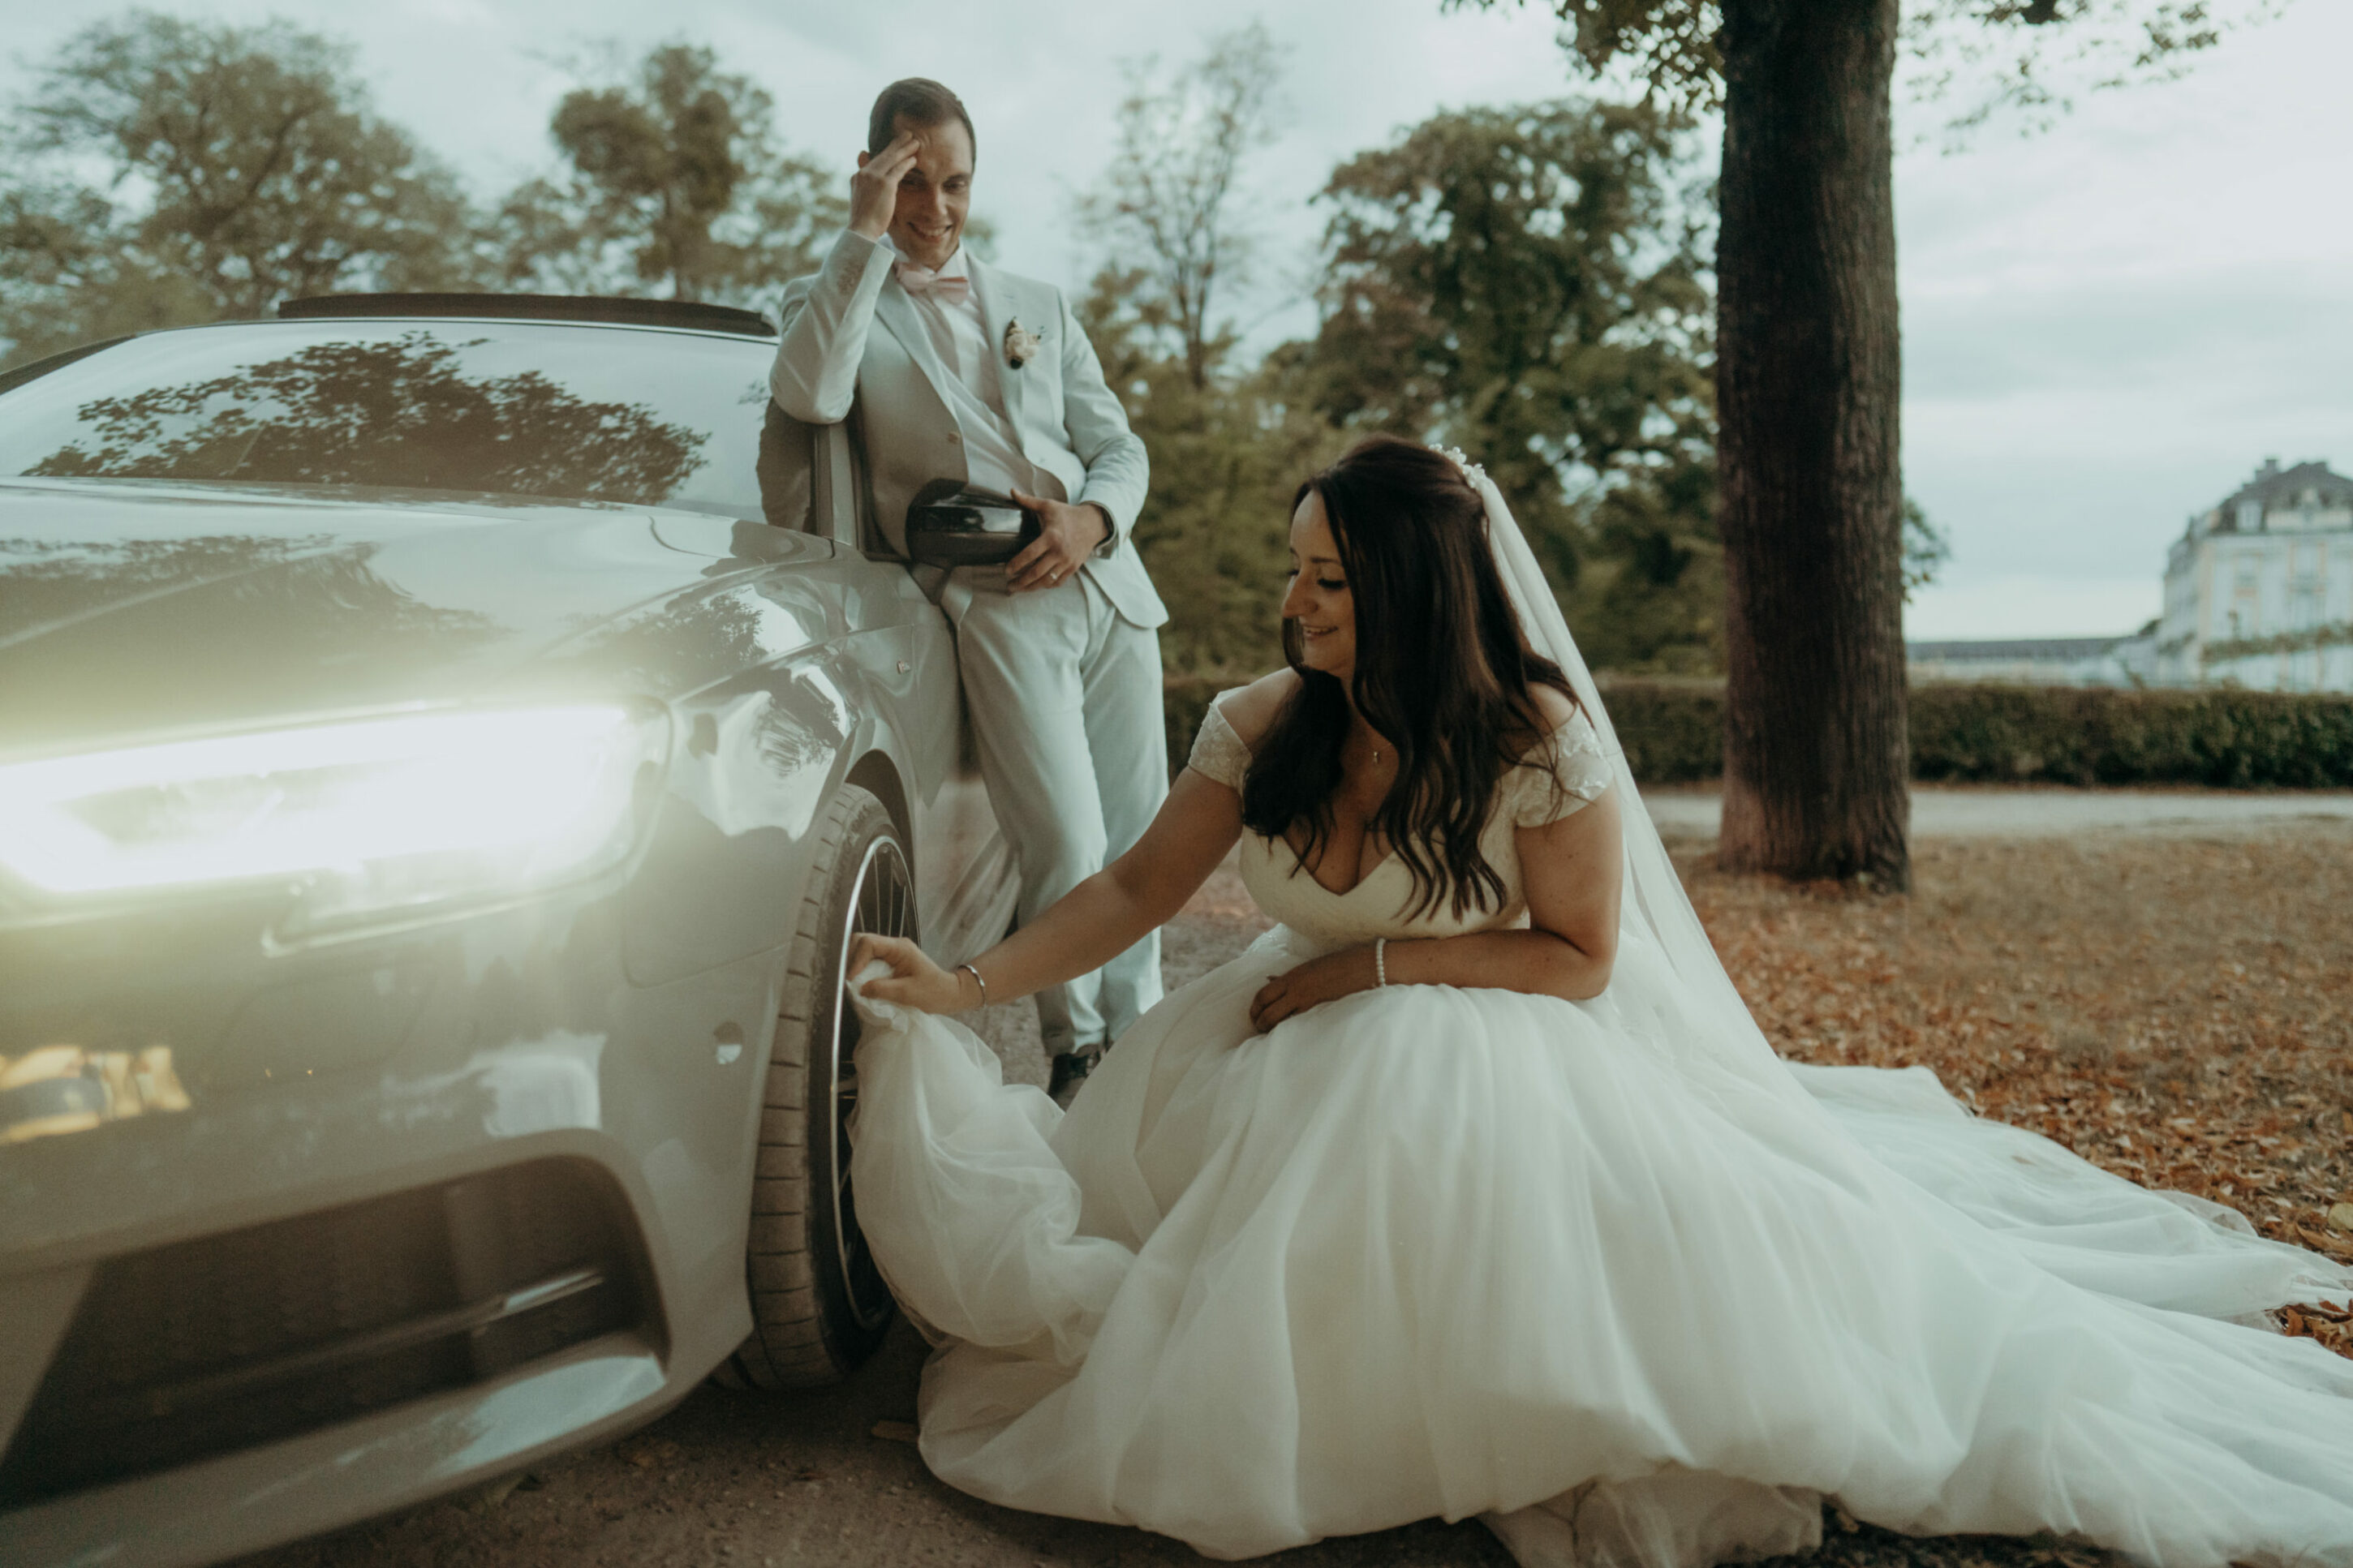 Braut putzt Felge des Autos mit Kleid, Bräutigam lacht und fasst sich an die Stirn